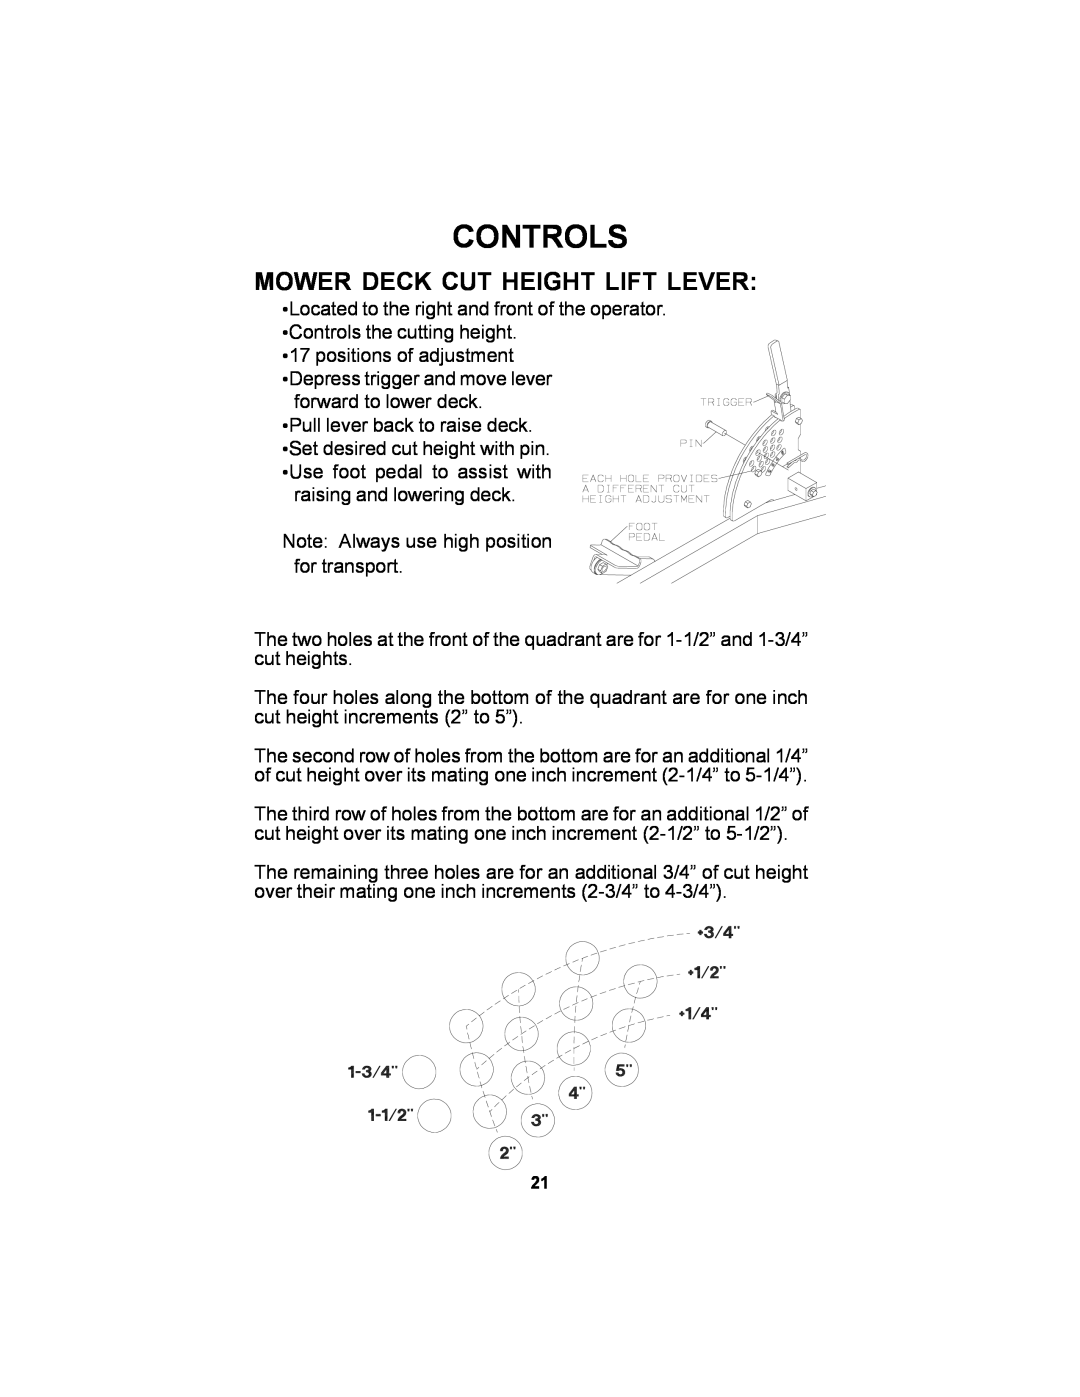 Dixon 11249-106 manual Mower Deck Cut Height Lift Lever, Controls 